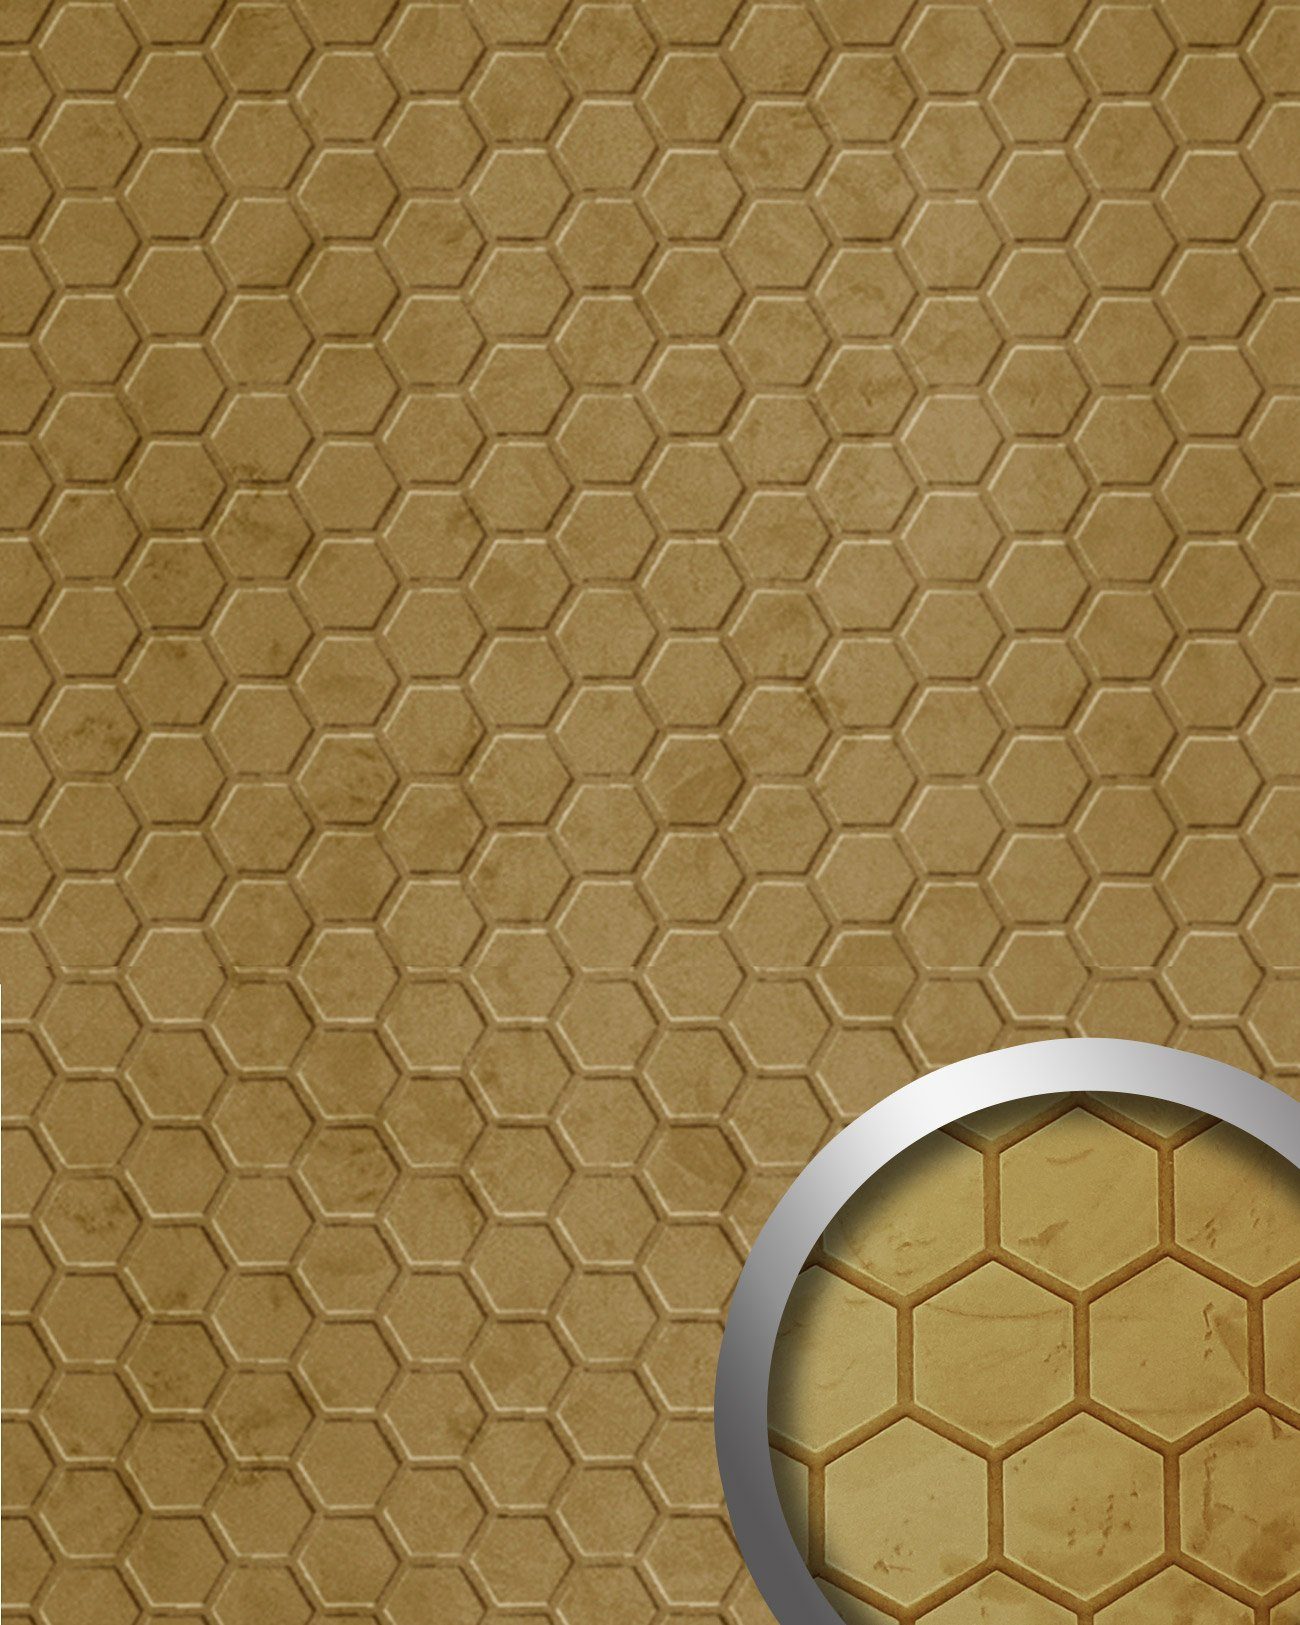 Wallface Dekorpaneele 22711-SA, BxL: 100x260 cm, 2.6 qm, (Dekorpaneel, 1-tlg., Wandverkleidung in Honigwaben Optik) selbstklebend, gelb, matt, samtig weich